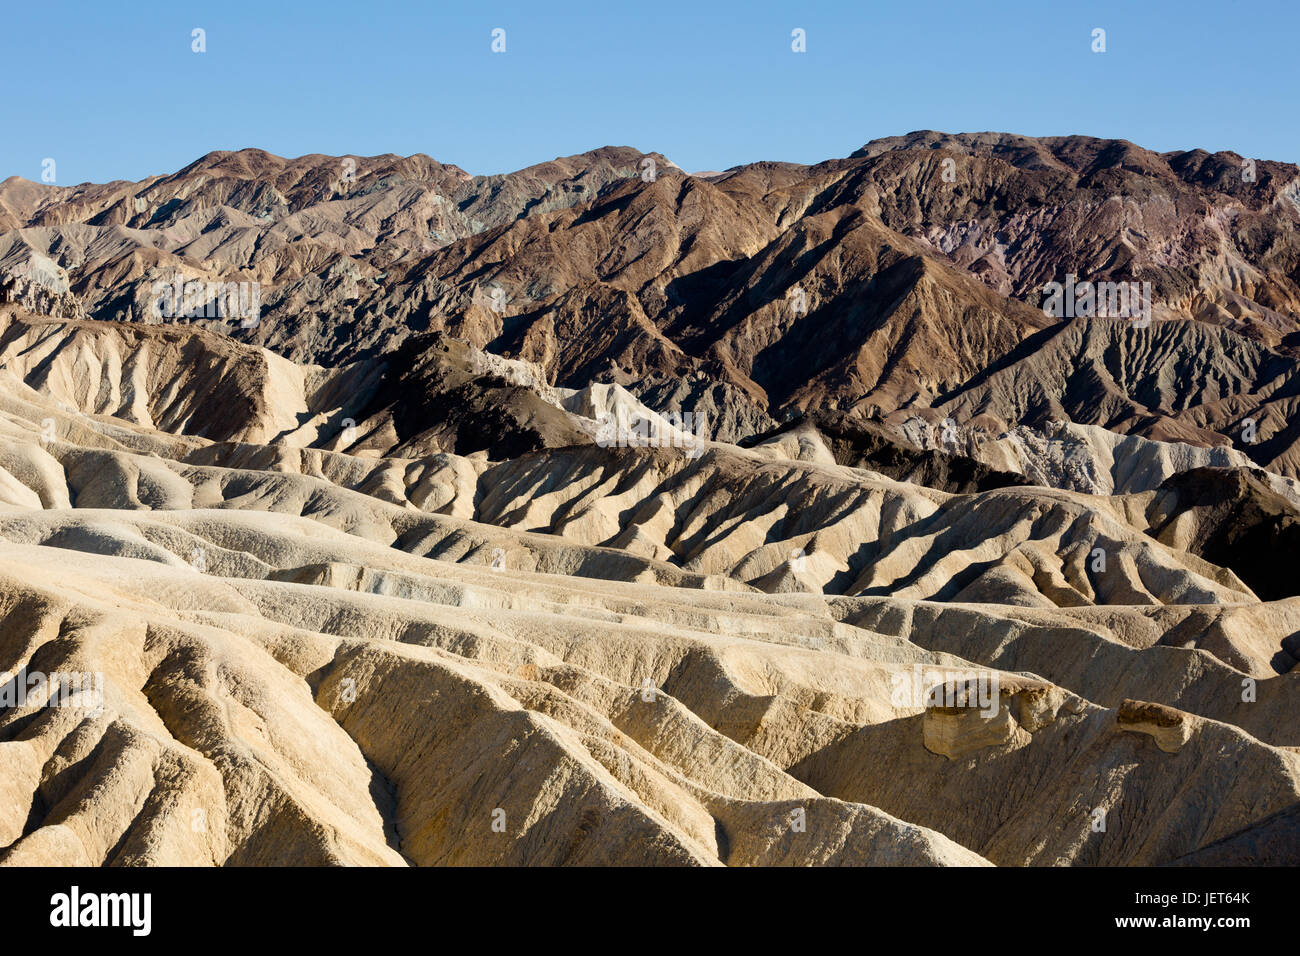 USA, Kalifornien, Death Valley ist ein Wüstental im Osten Kaliforniens. Es ist die niedrigste, trockenste und heißeste Gegend in Nordamerika. Zabriskie Point Ansicht. Stockfoto